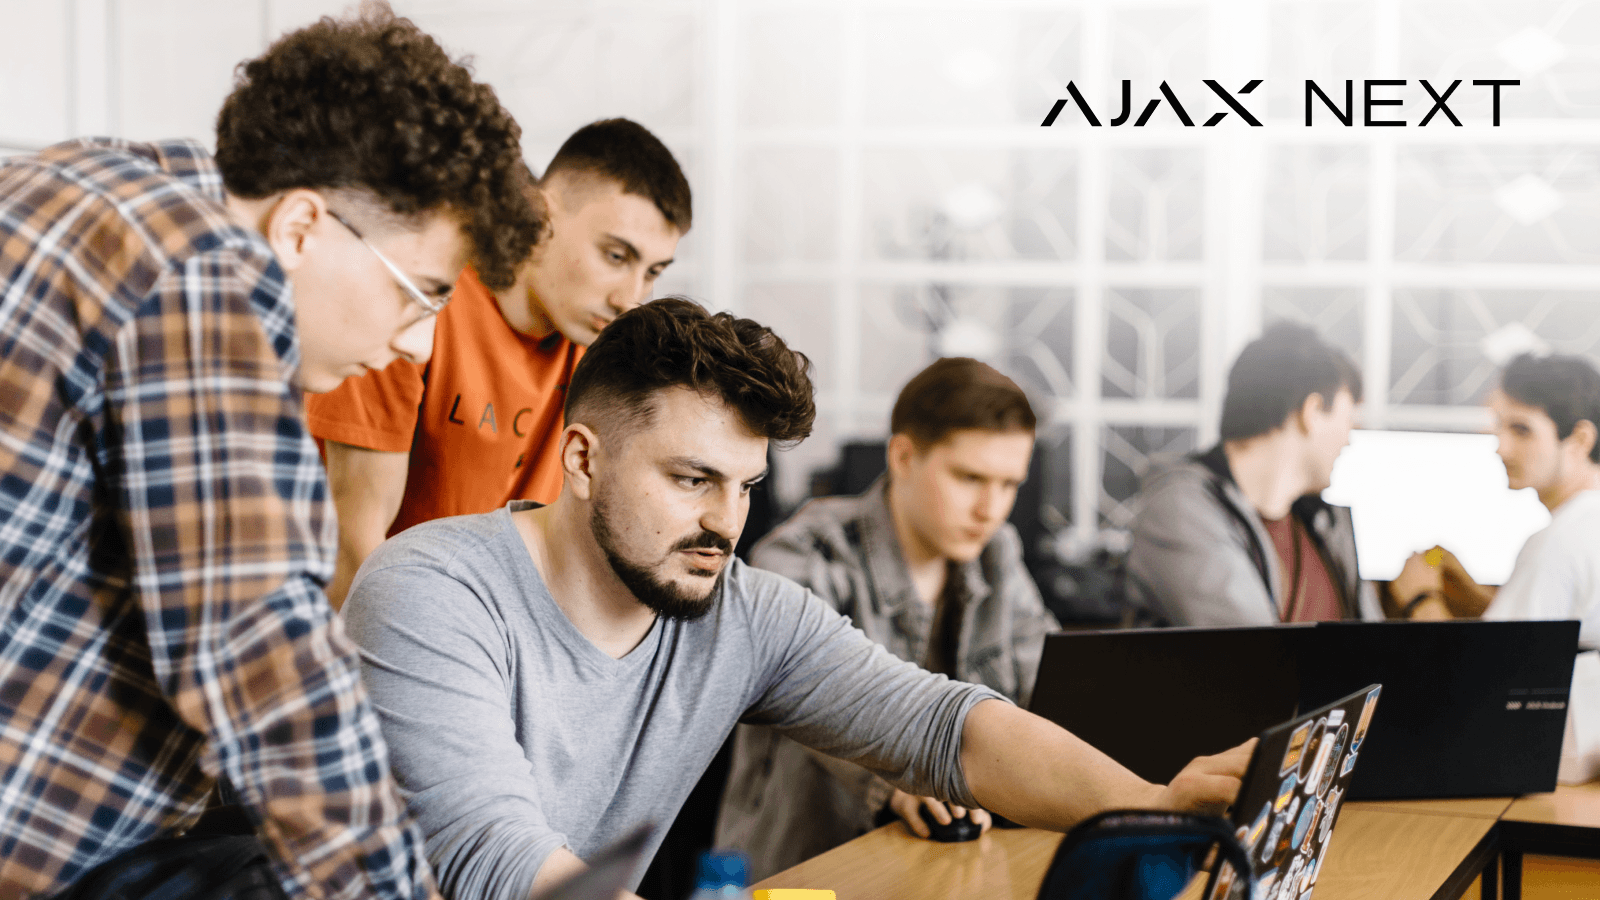 Ajax Systems startet eine neue Ausbildungsinitiative  Ajax Next